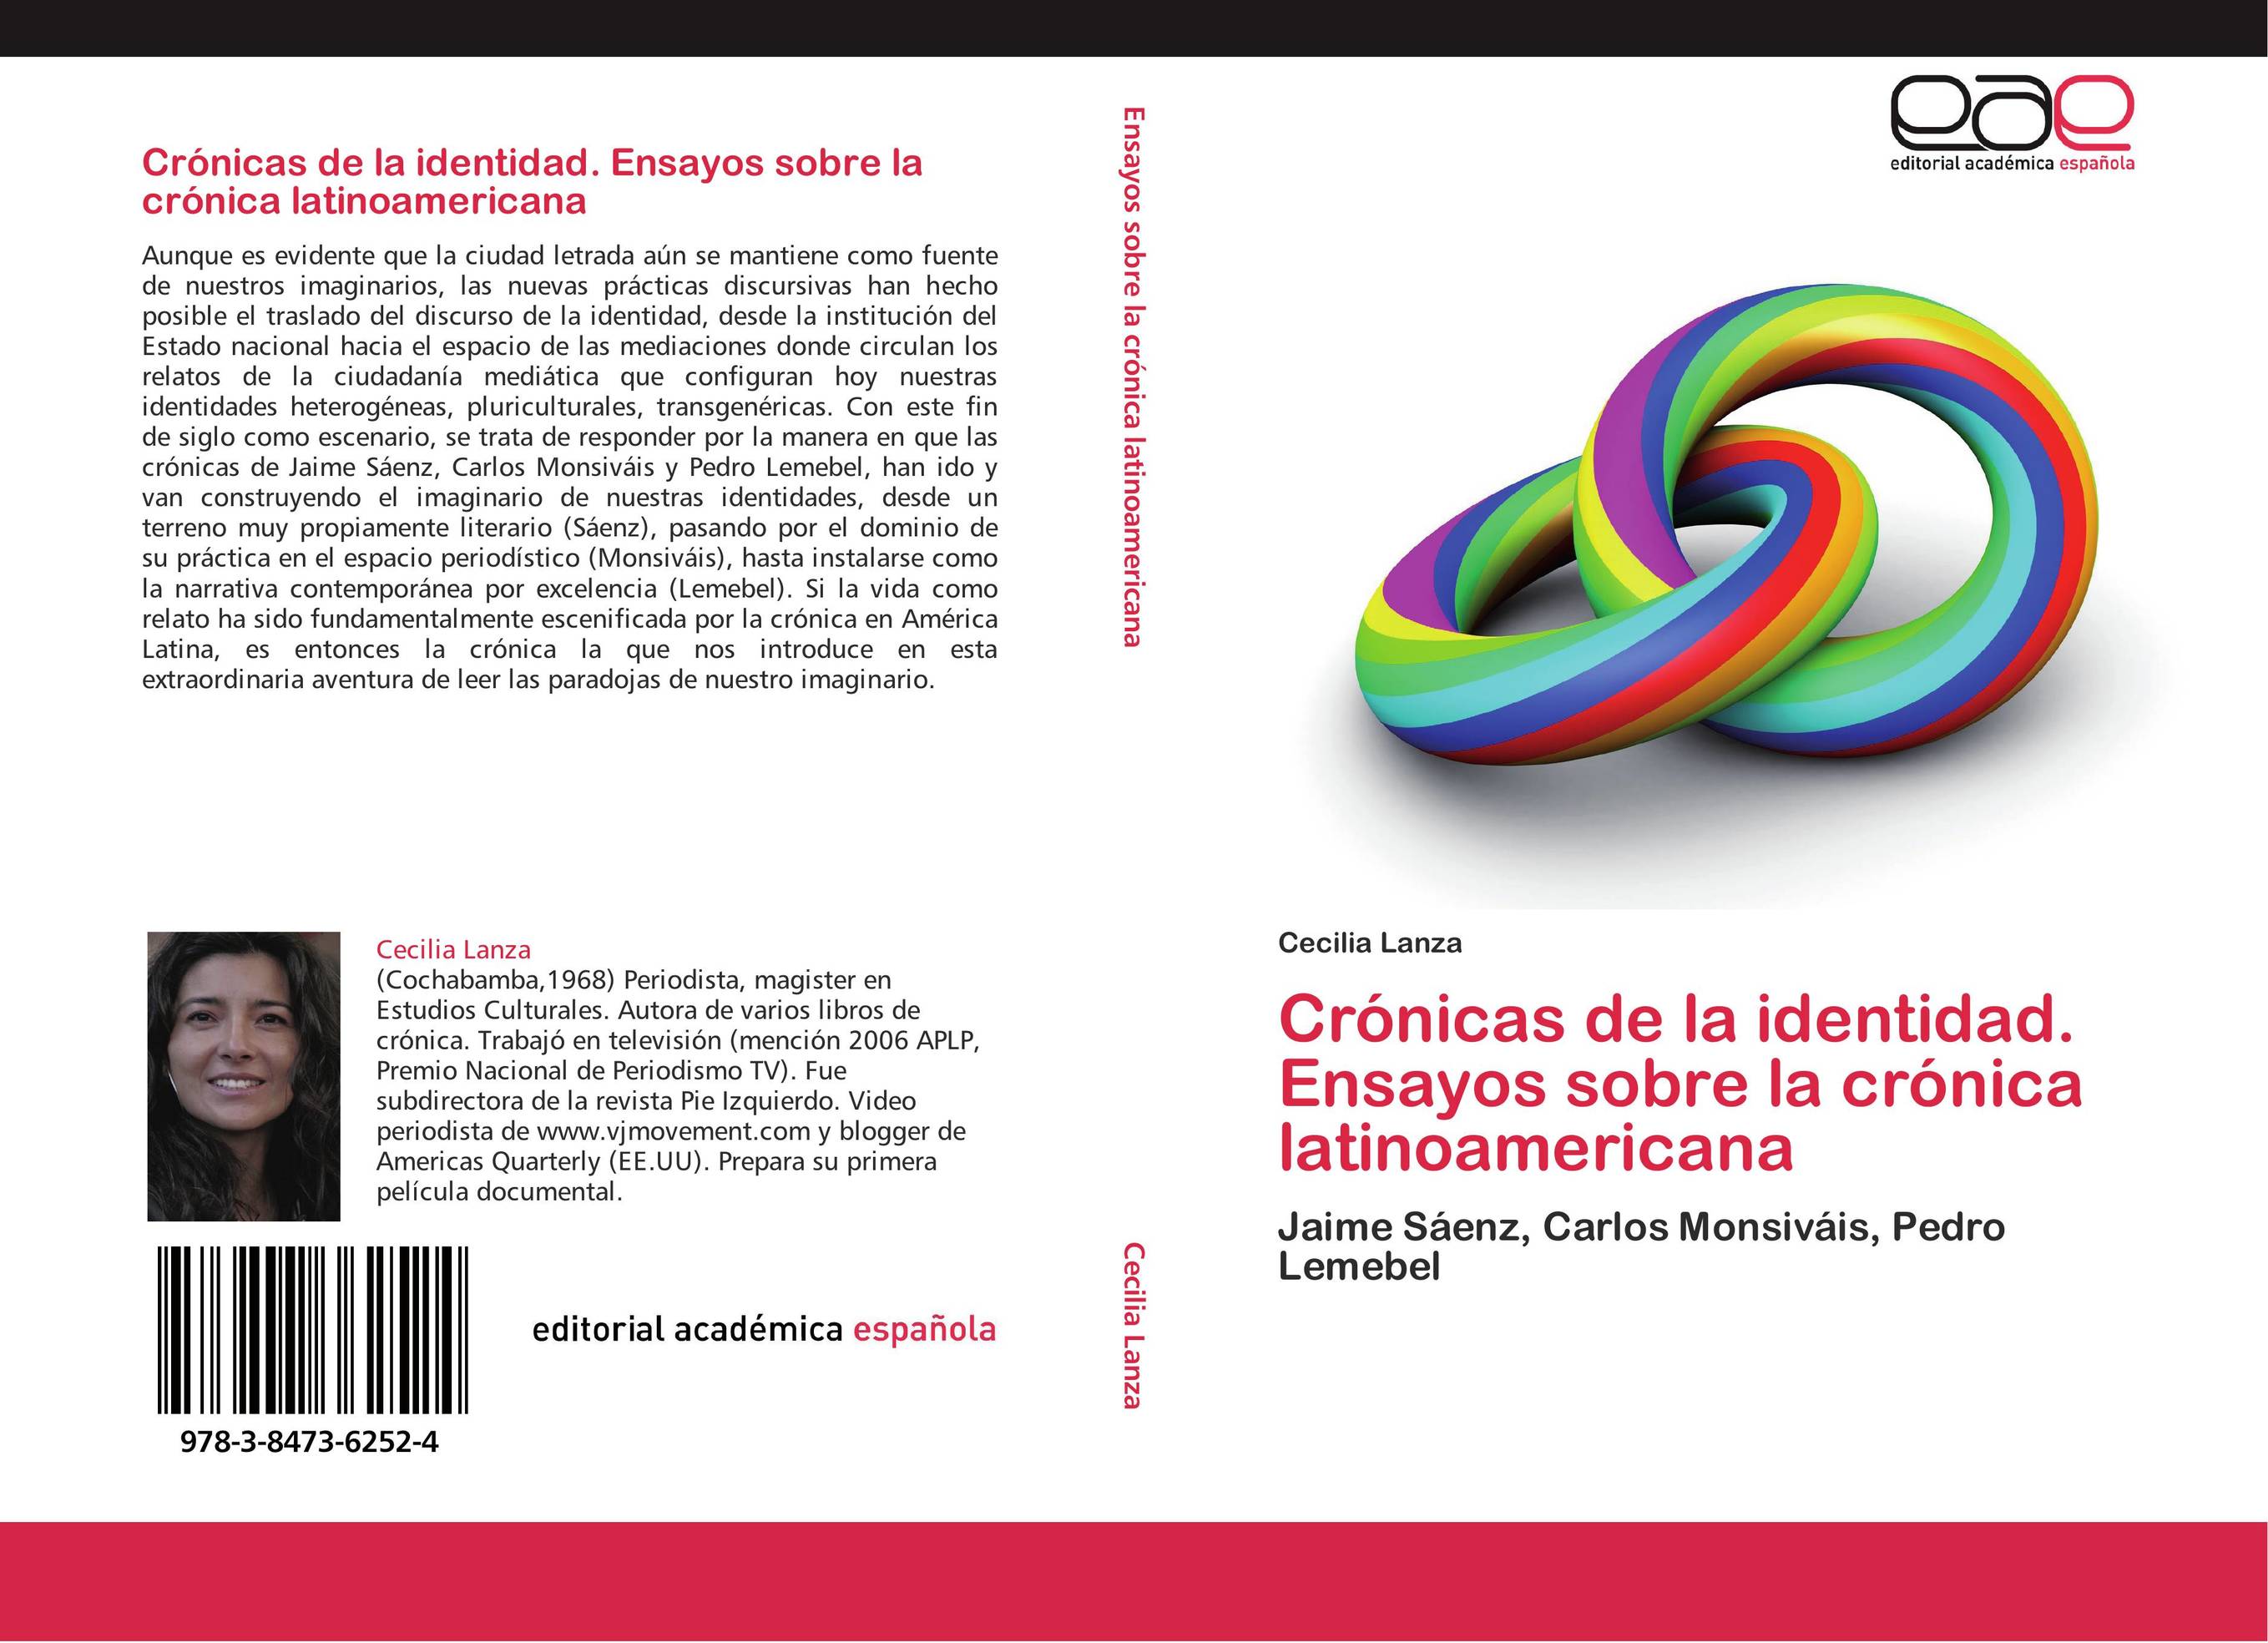 Crónicas de la identidad. Ensayos sobre la crónica latinoamericana